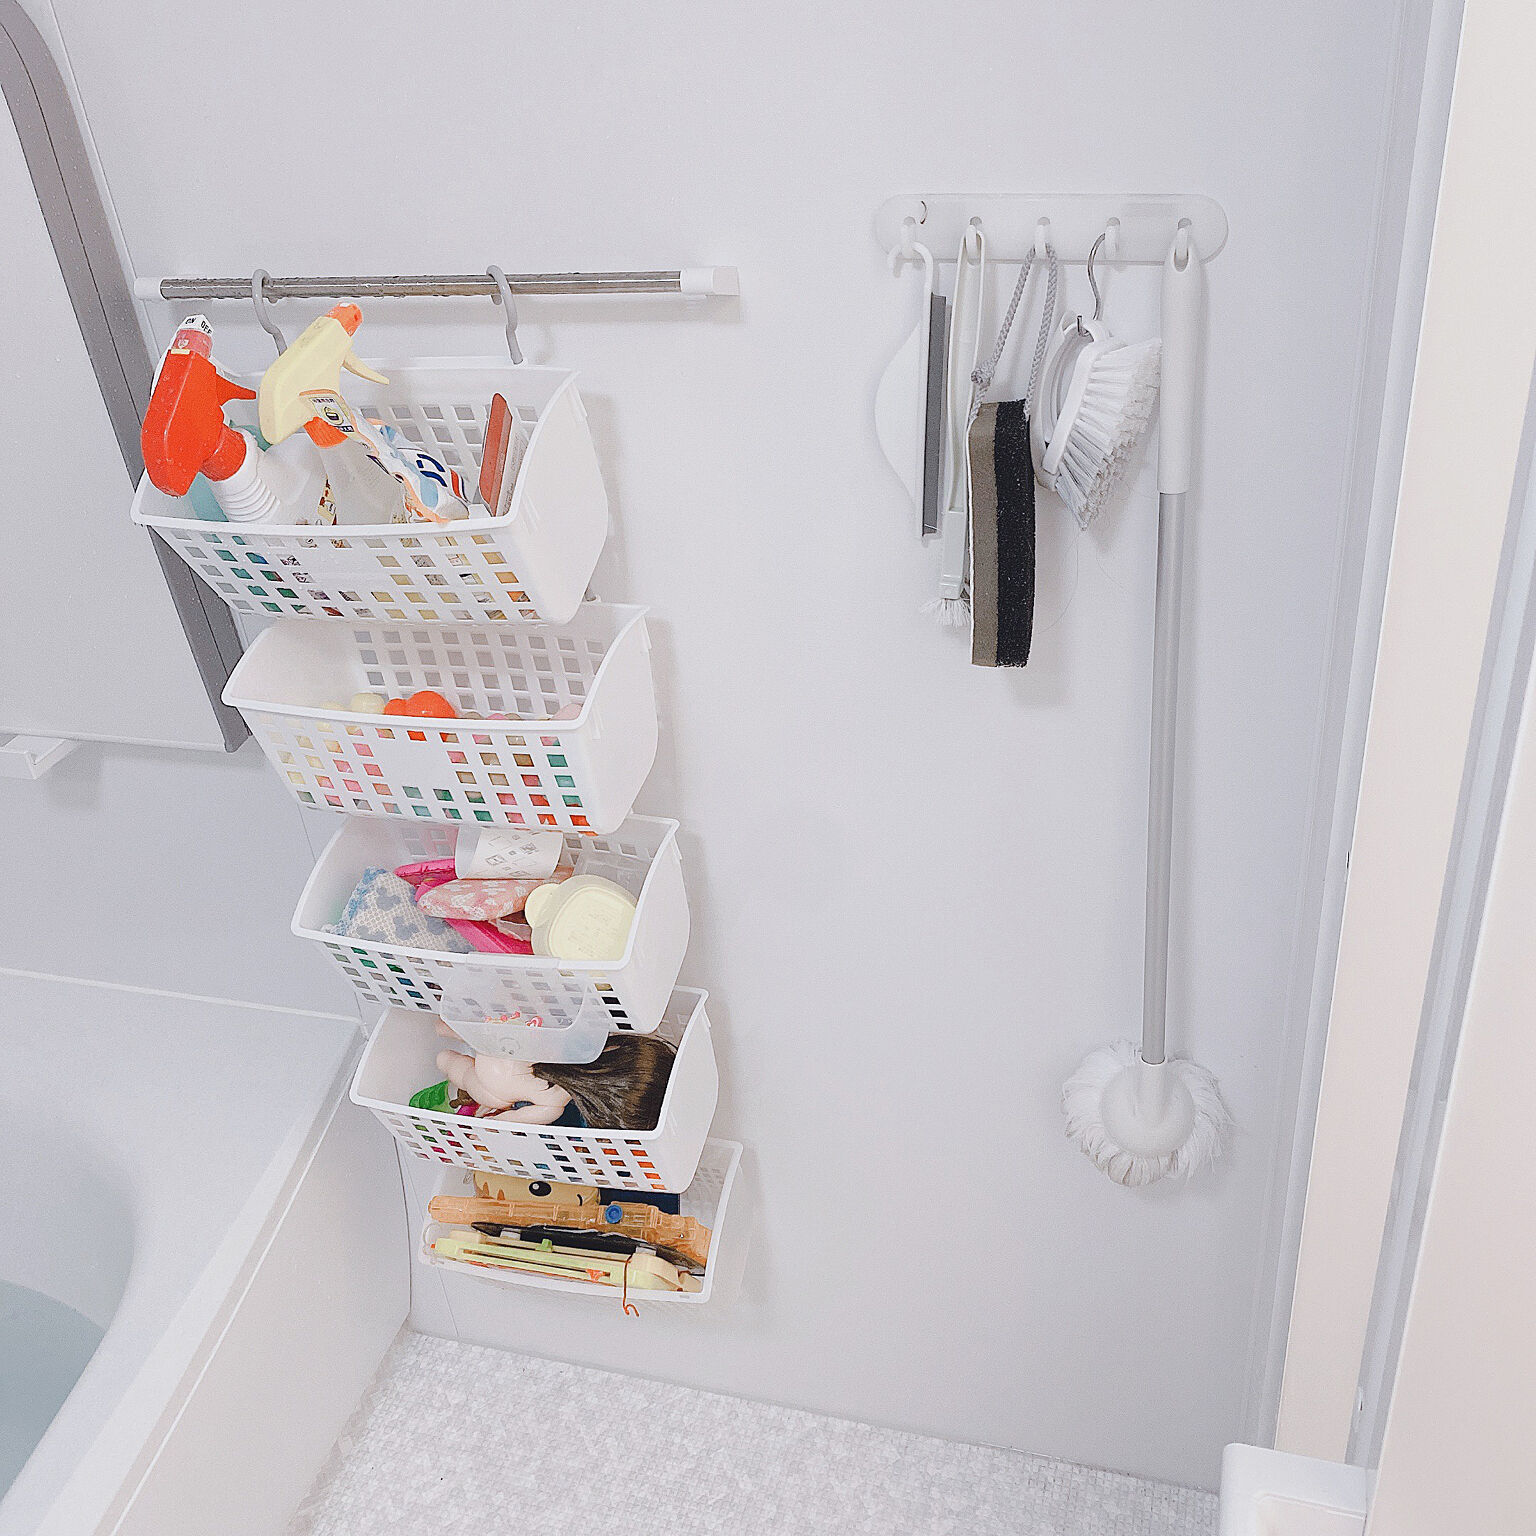 いつもきれいで清潔に お風呂収納は100均の 吊るす収納 がオススメ Roomclip Mag 暮らしとインテリアのwebマガジン